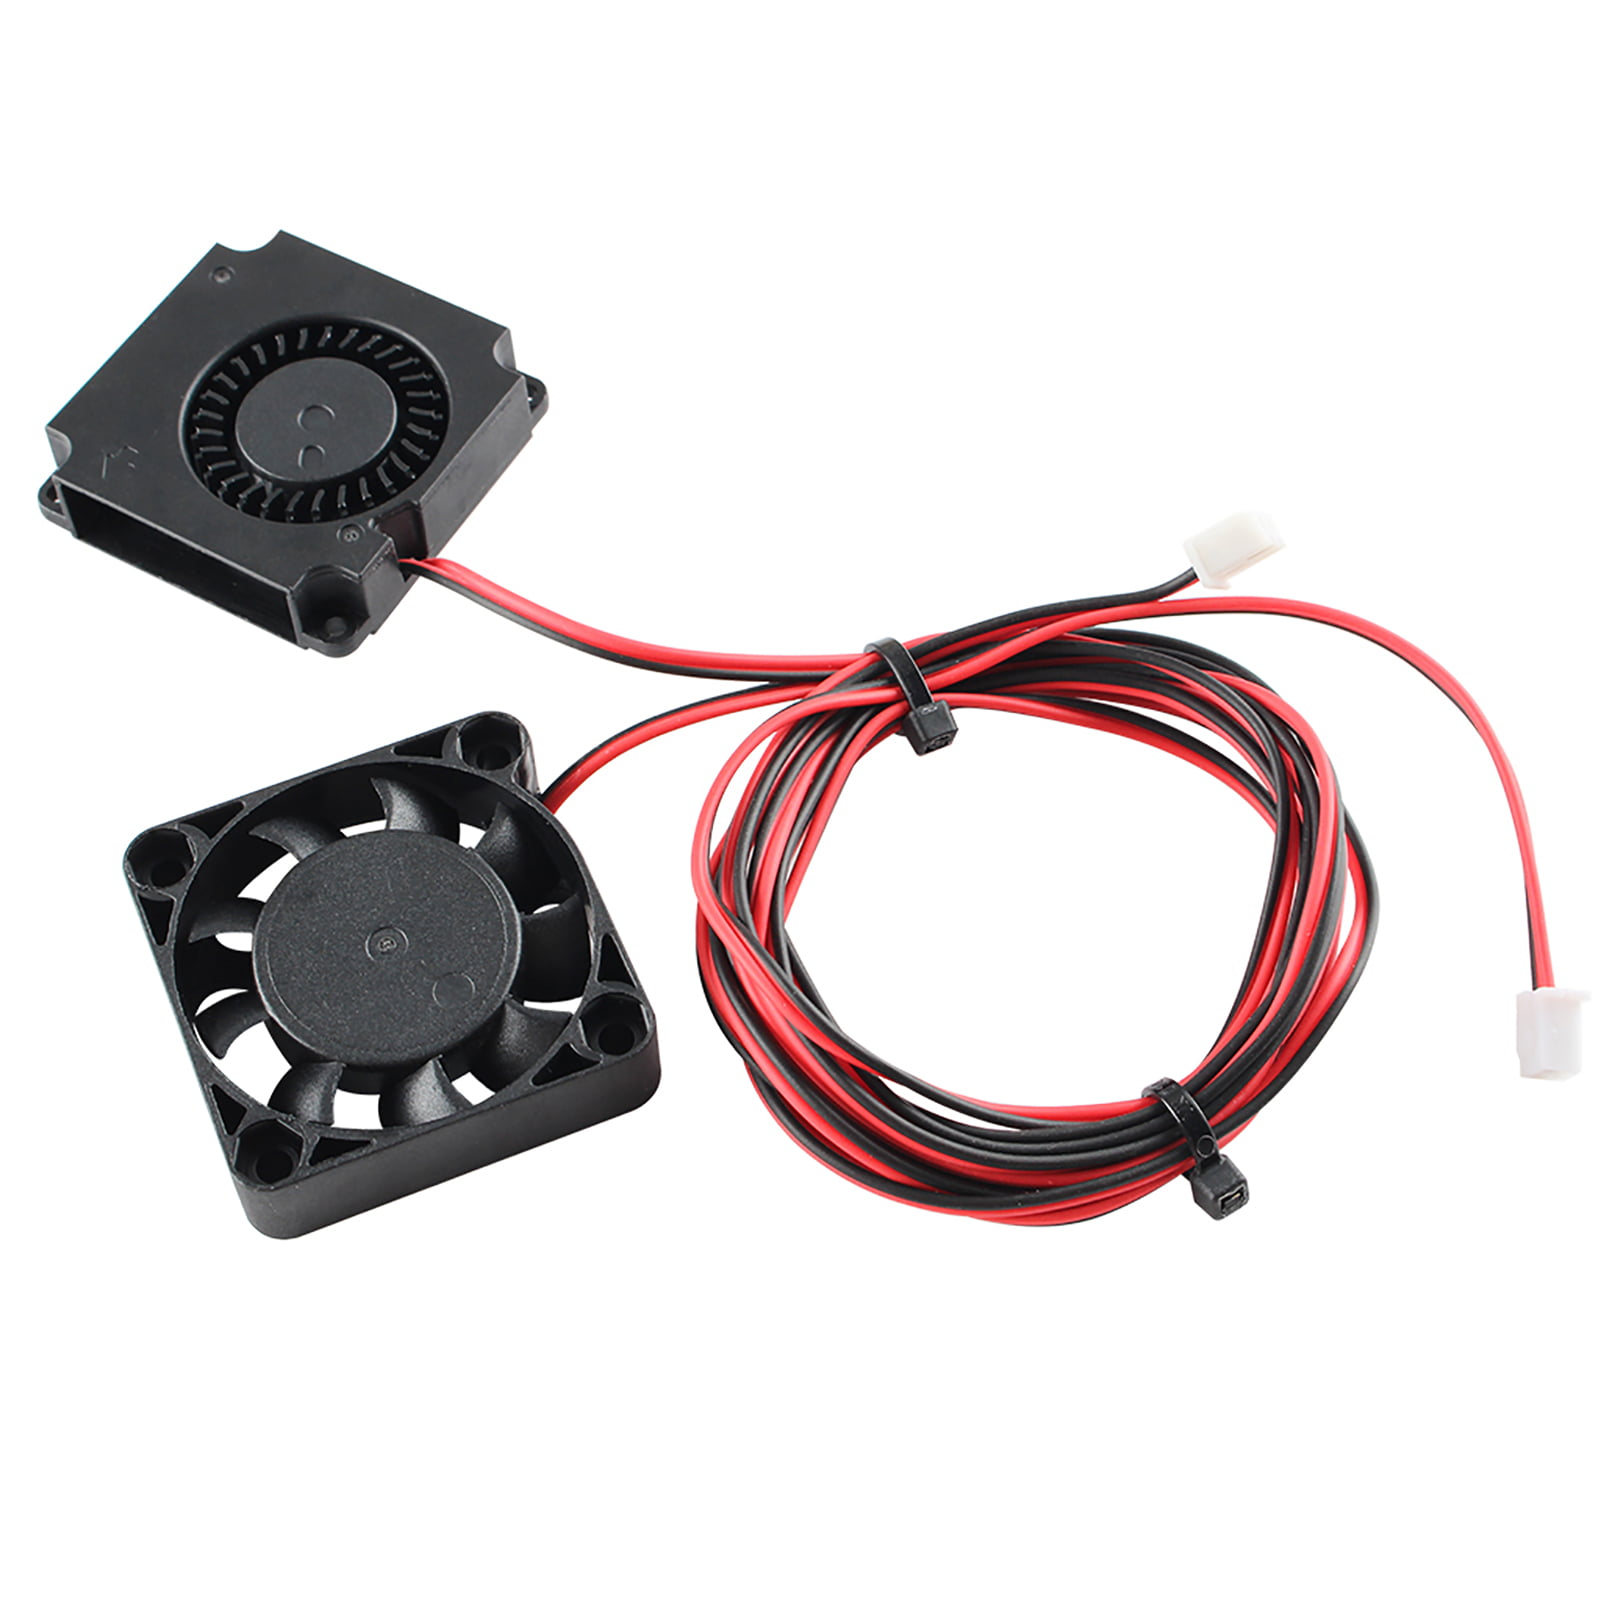 Extruder Hot End Cooler Fans & Auto Leveling Position Sensor For 3D Printer 